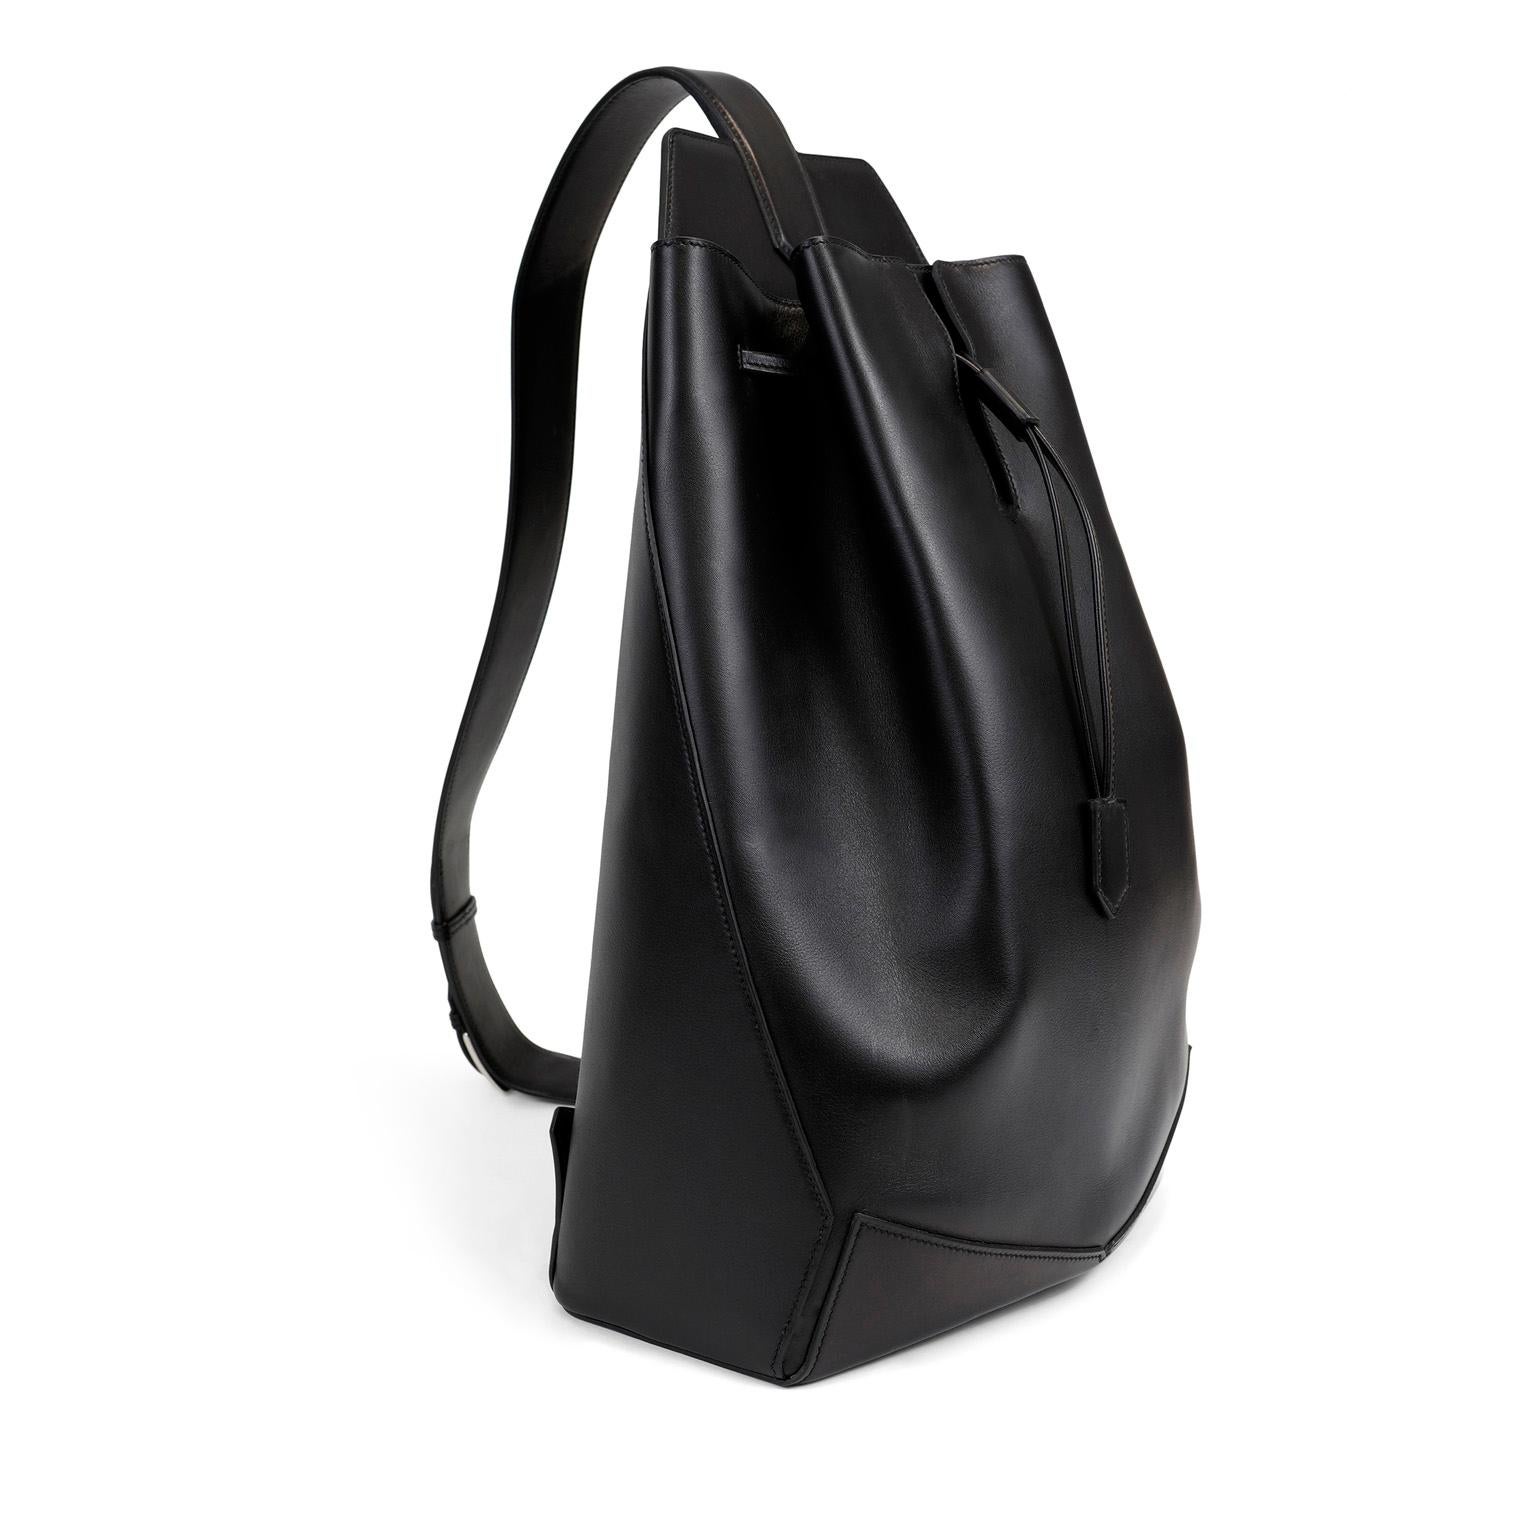 Dieser authentische Hermès Black Swift Leather Sling Backpack ist in tadellosem Zustand.    Hermès-Taschen werden von erfahrenen Kunsthandwerkern handgenäht und sind der Inbegriff von modischem Luxus.  
Swift Sling Bag aus schwarzem Glattleder ist